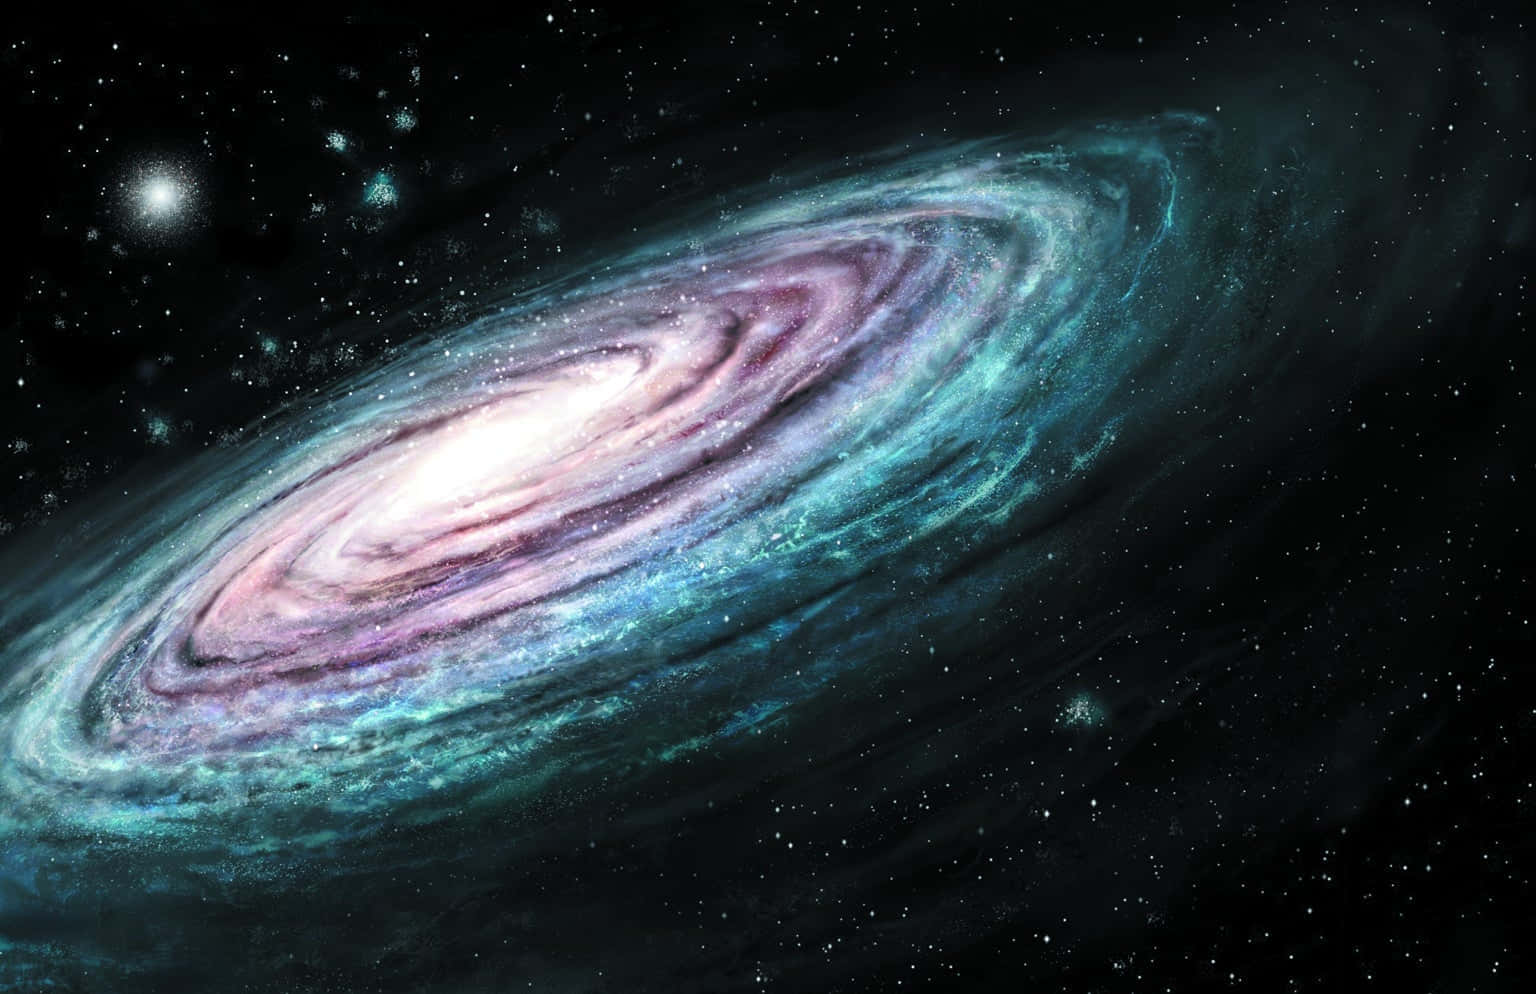 Galaksebilleder kommer til live under den natte himmel.